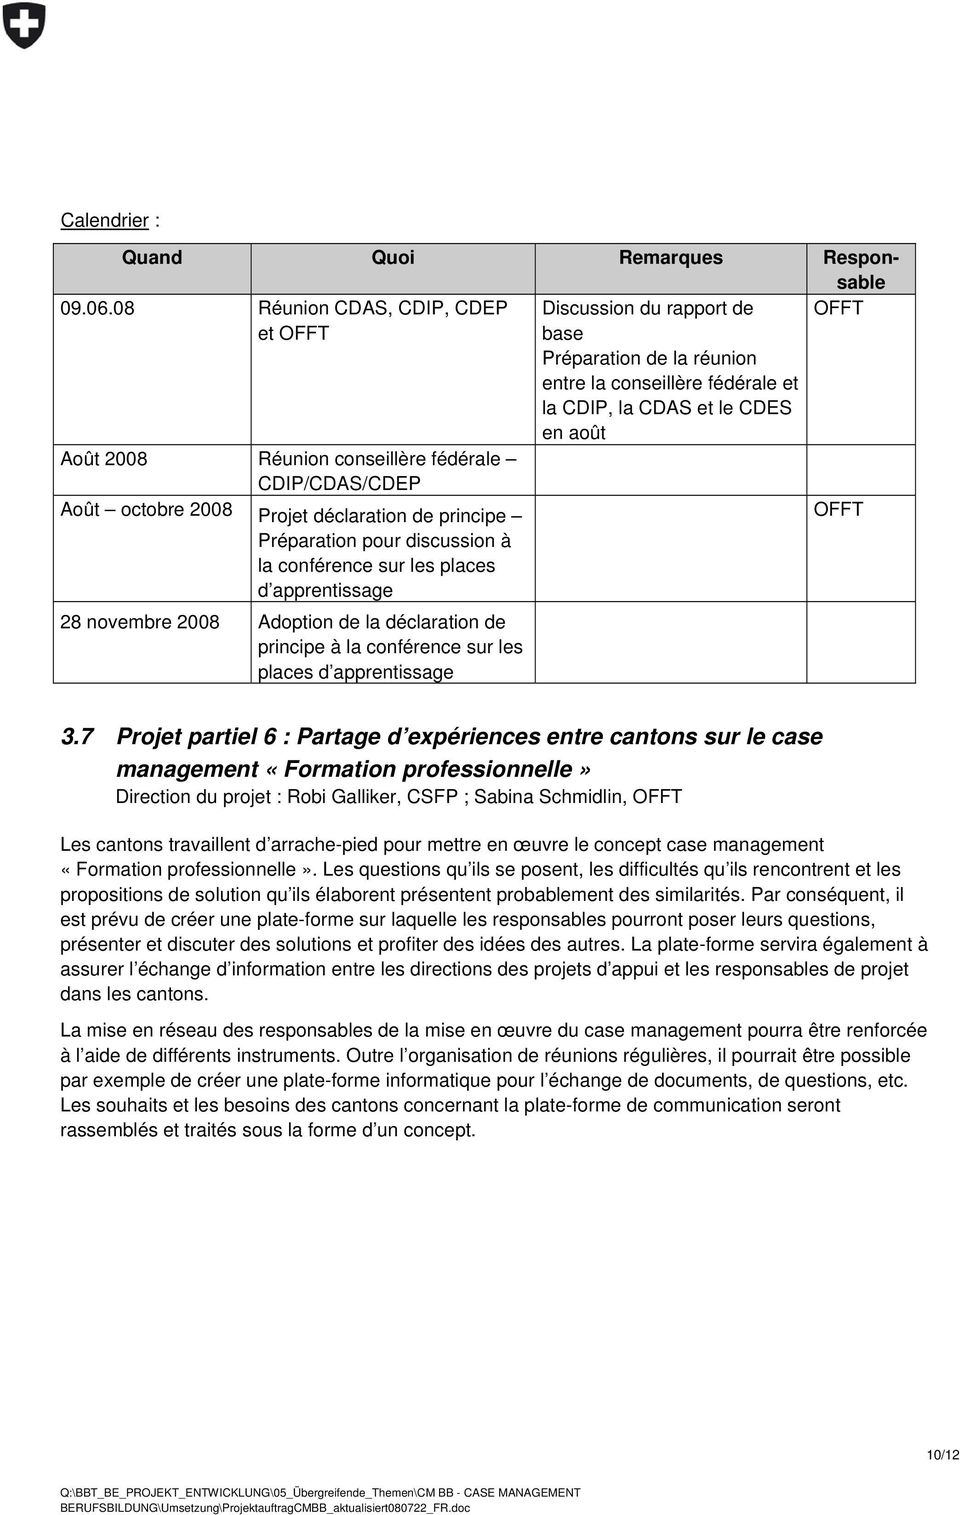 fédérale CDIP/CDAS/CDEP Août octobre 2008 Projet déclaration de principe OFFT Préparation pour discussion à la conférence sur les places d apprentissage 28 novembre 2008 Adoption de la déclaration de